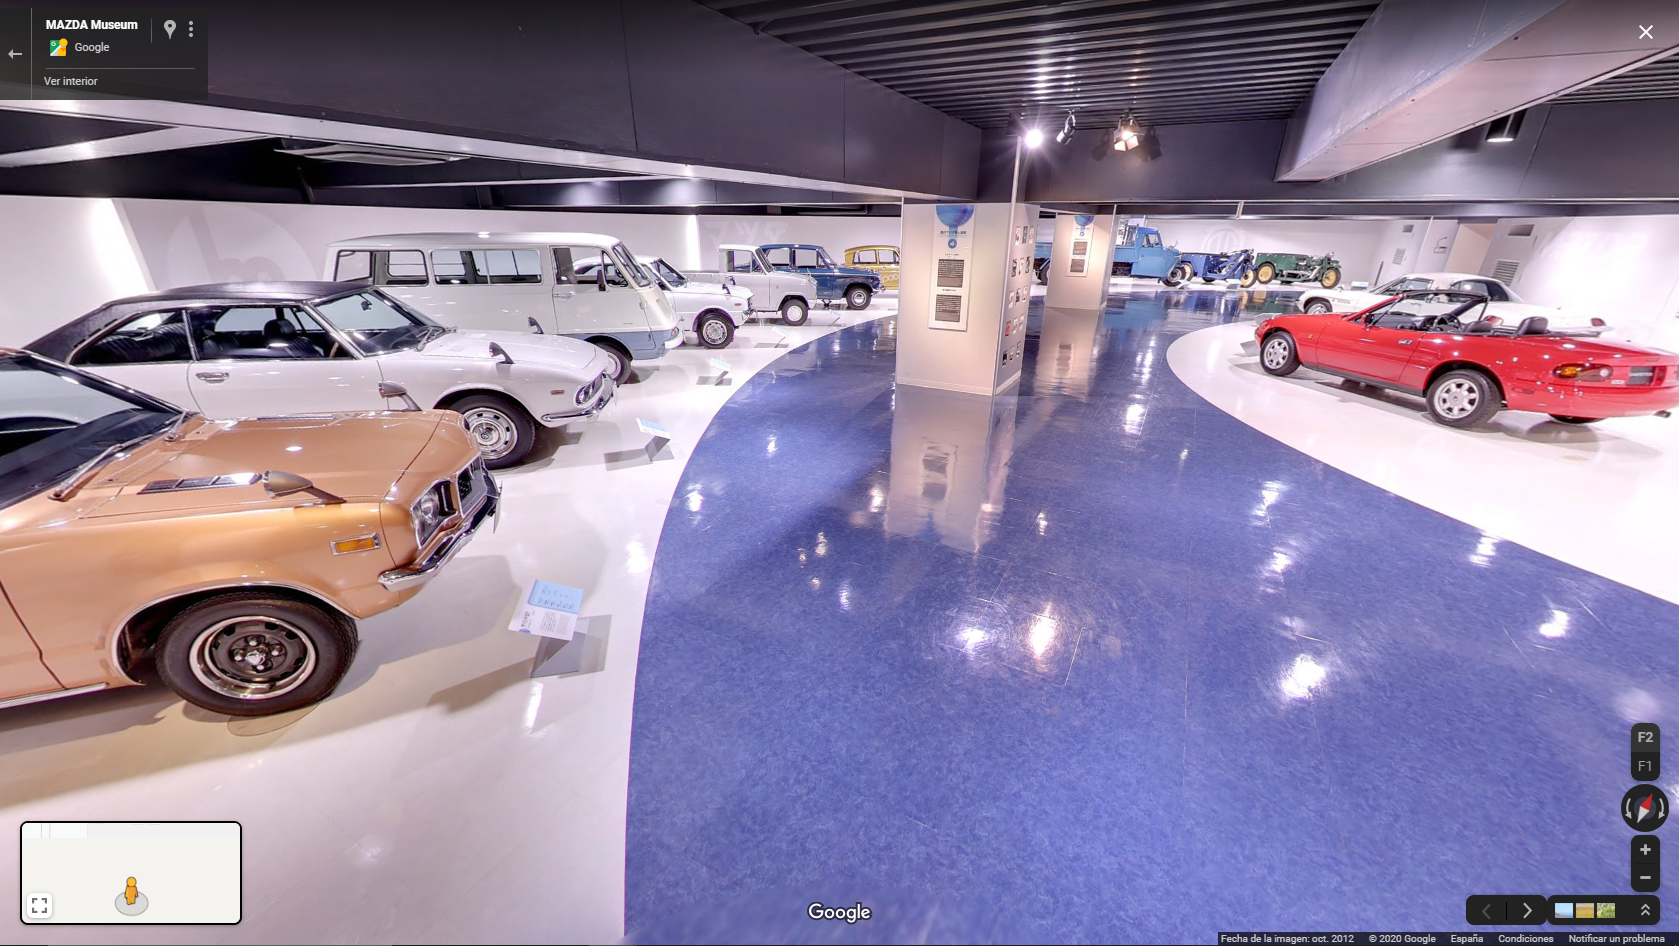 Hoy visitamos el museo virtual de Mazda